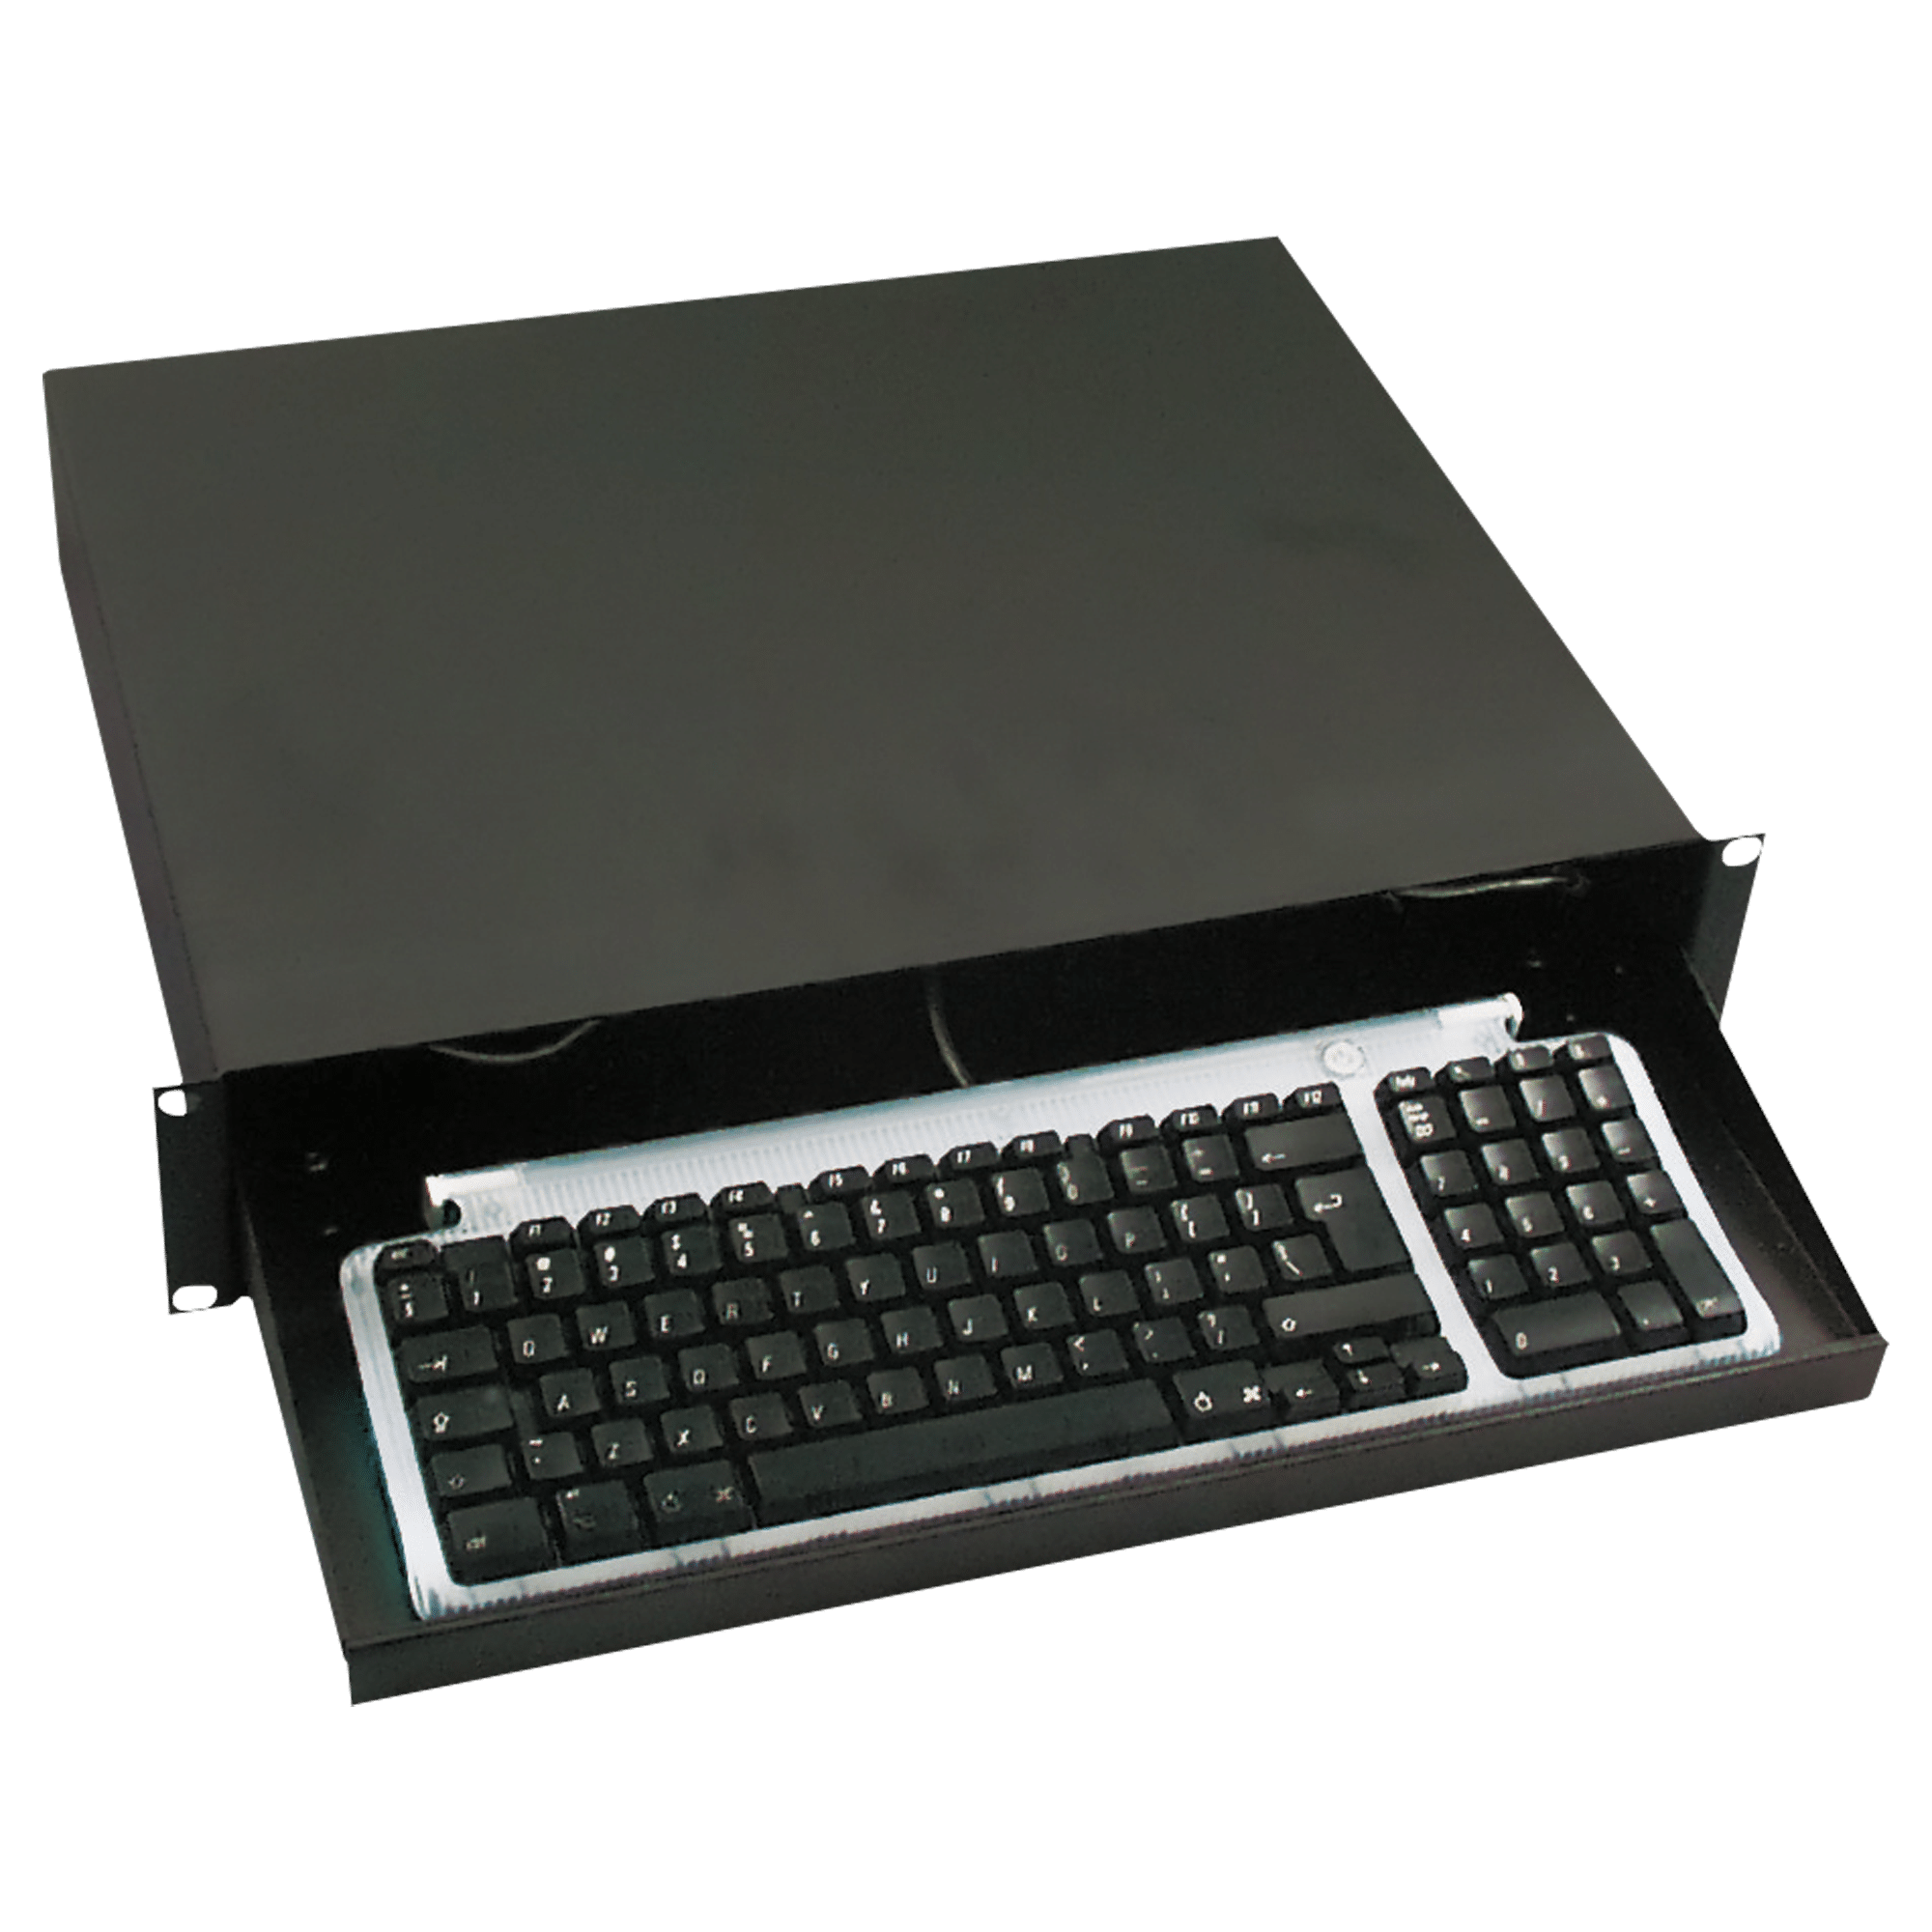 19 Inch Keyboard Drawer - Onlinediscowinkel.nl